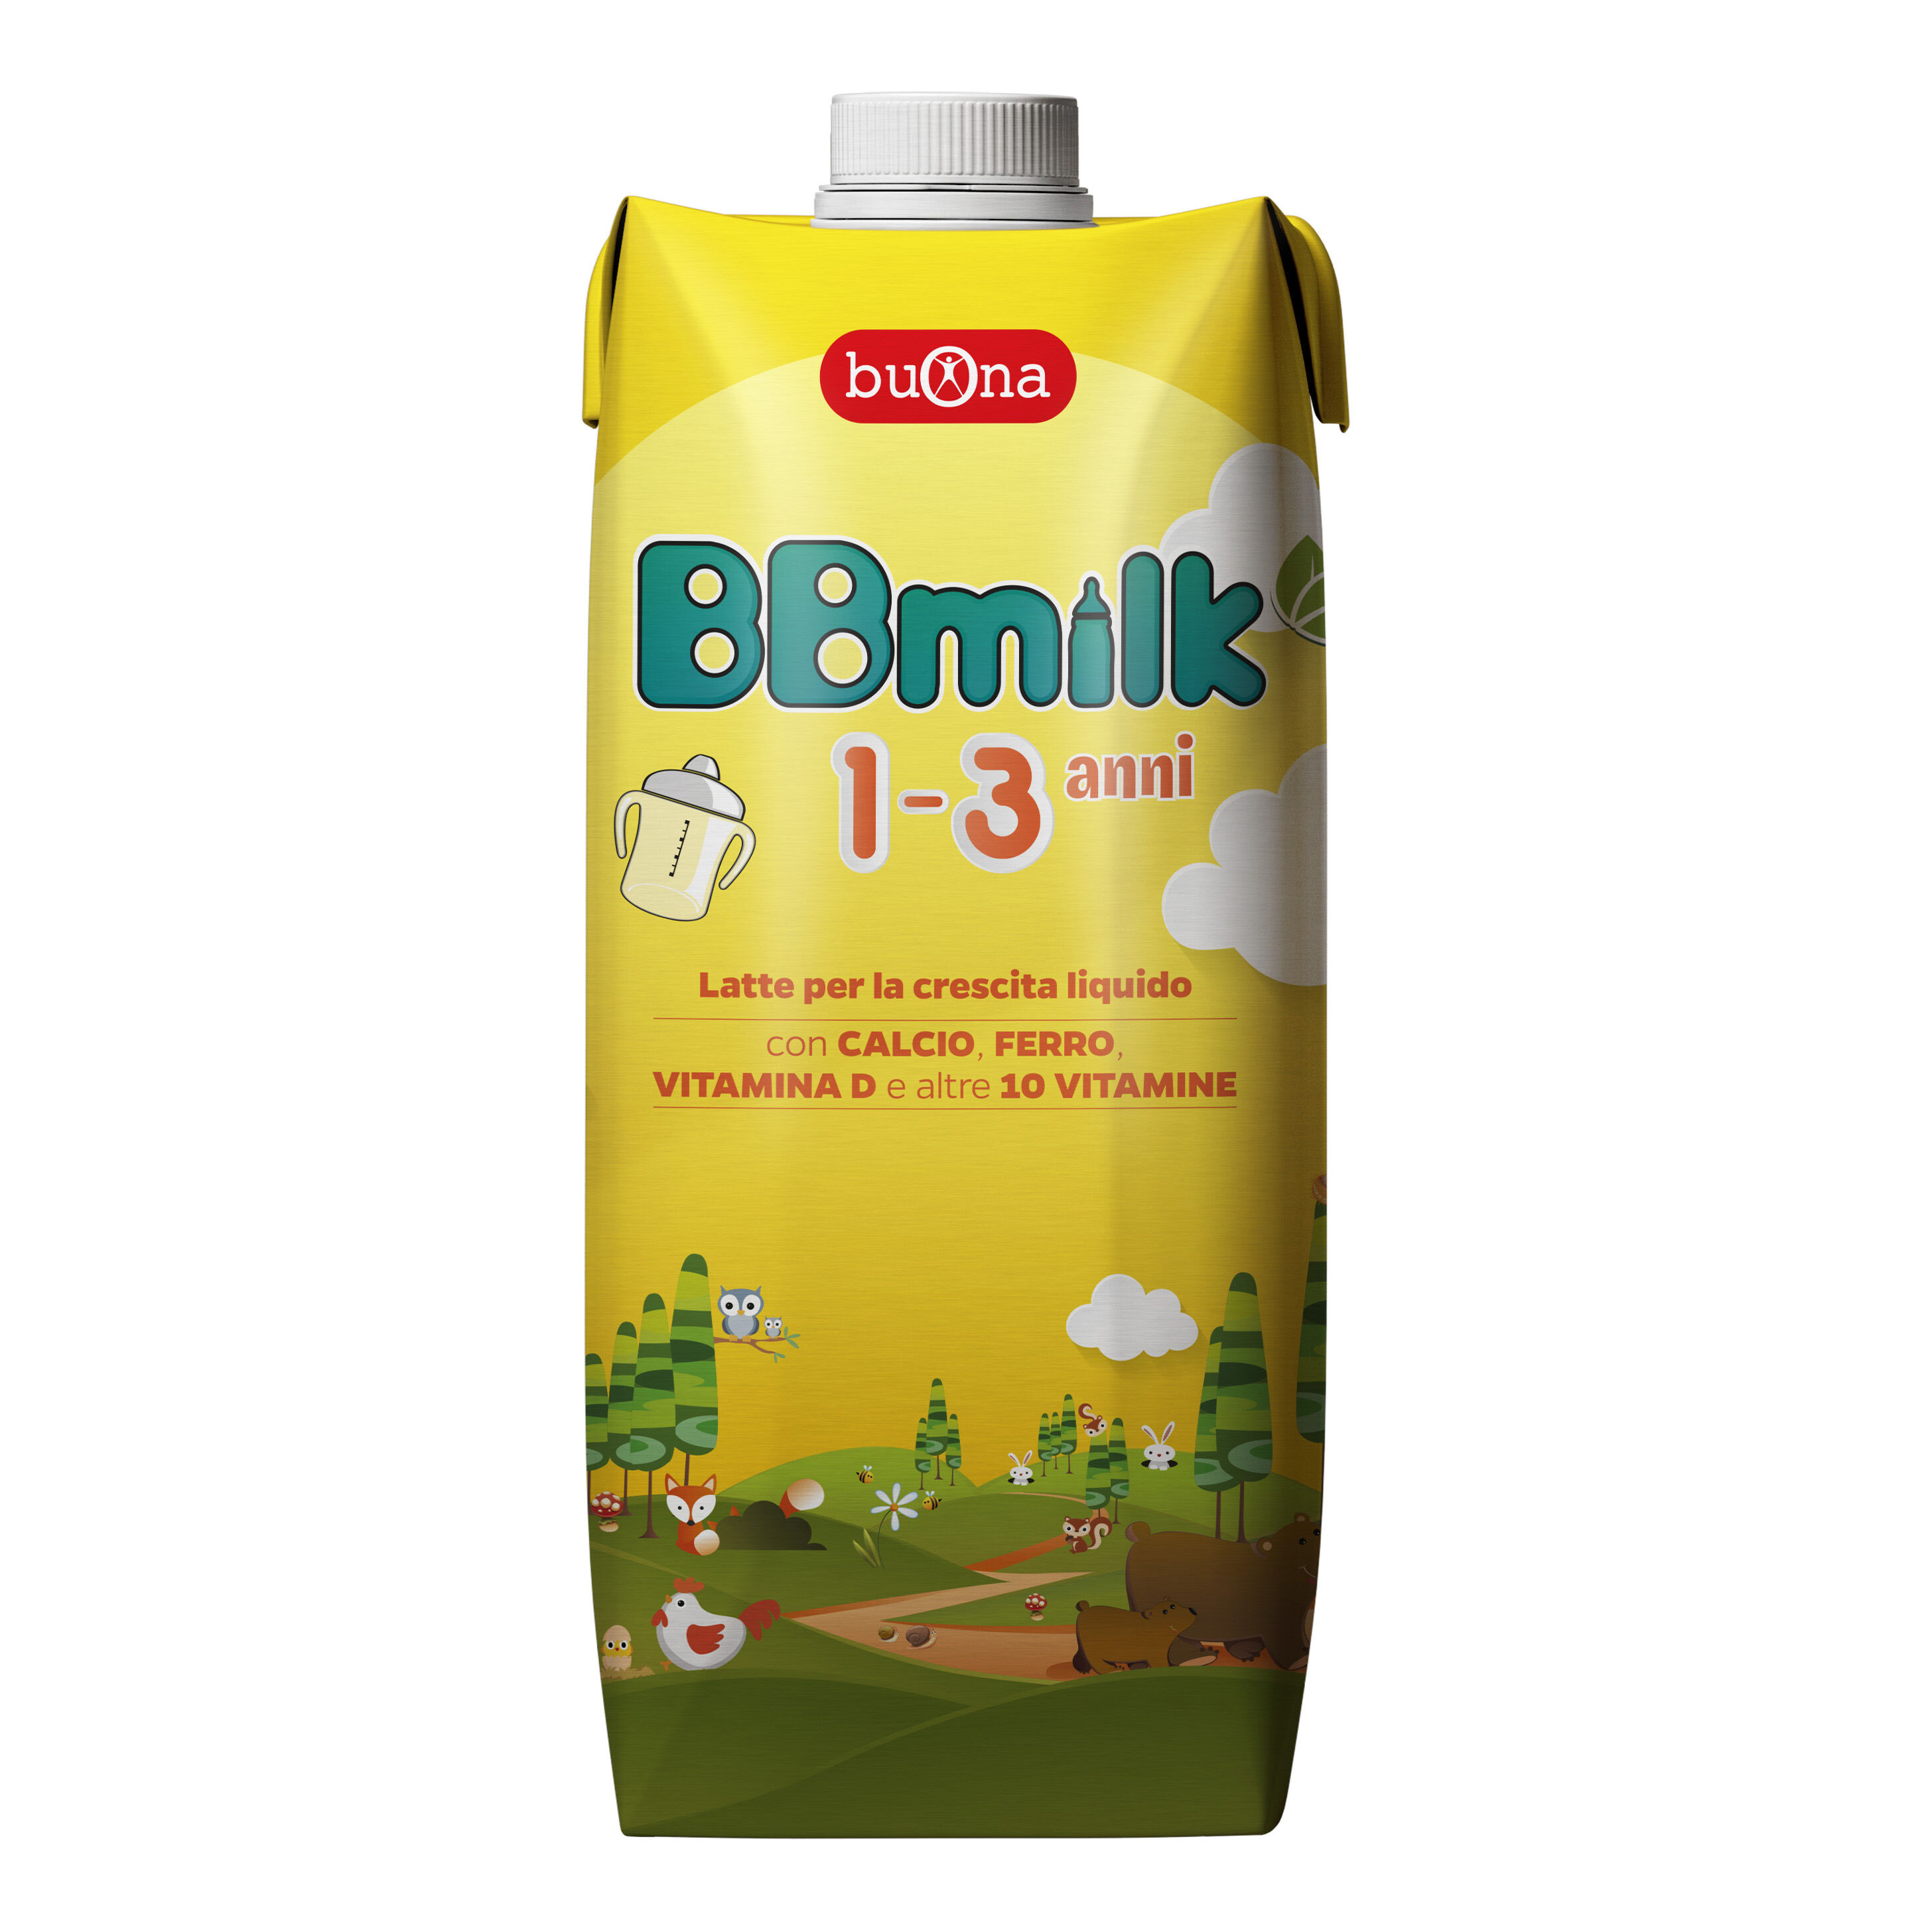 buona spa societa' benefit bb milk 1-3 anni liquido 500ml